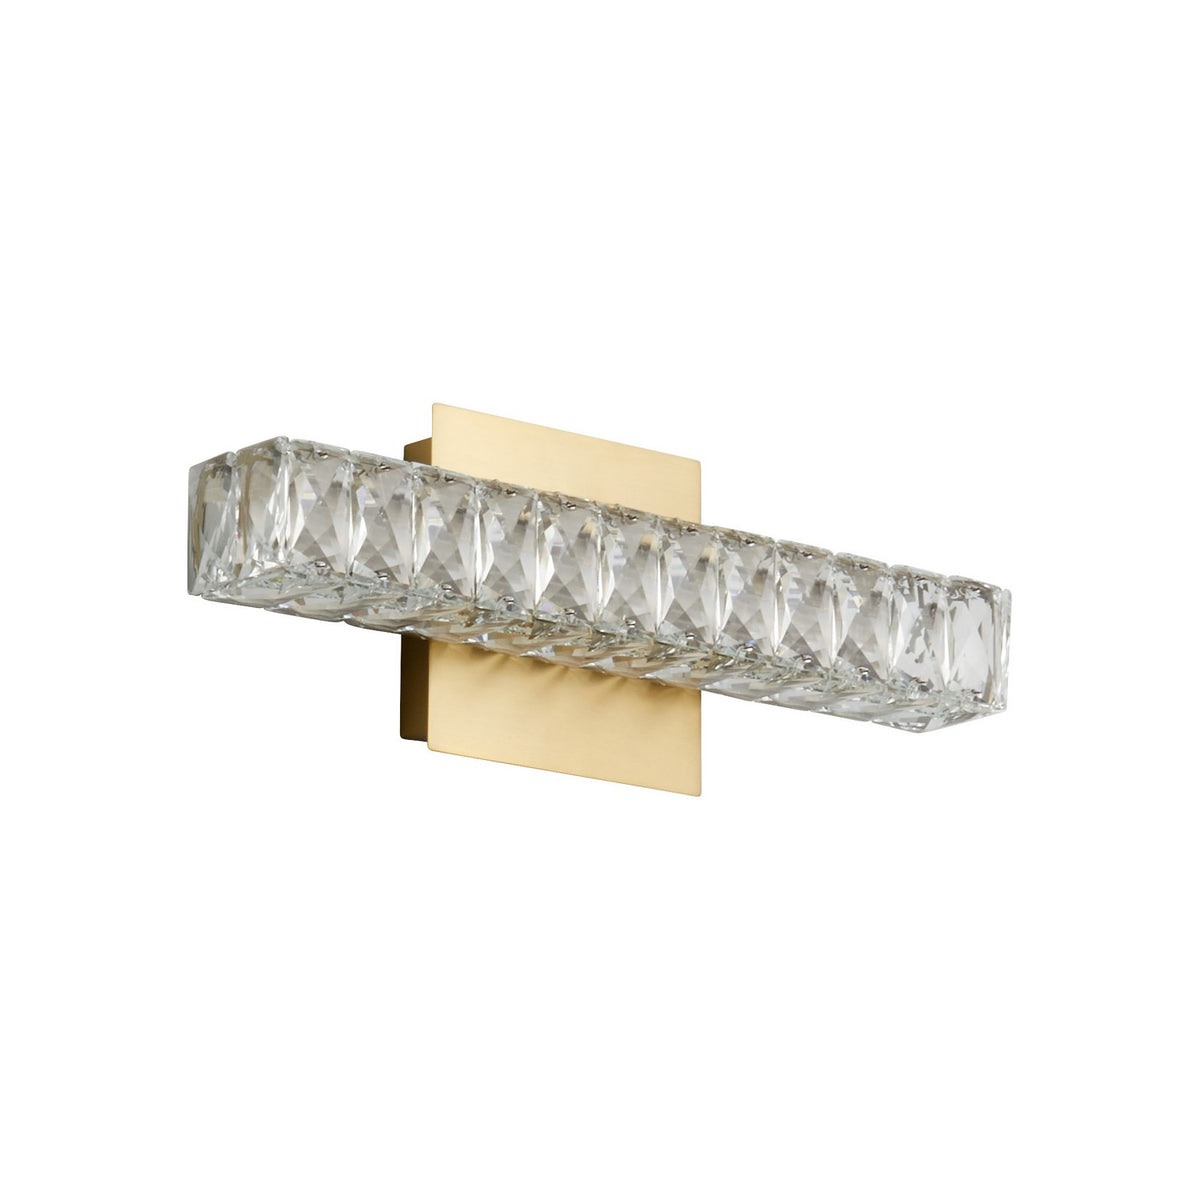 Oxygen Lighting - 3-572-40 - LED Wall Sconce - Élan - Aged Brass